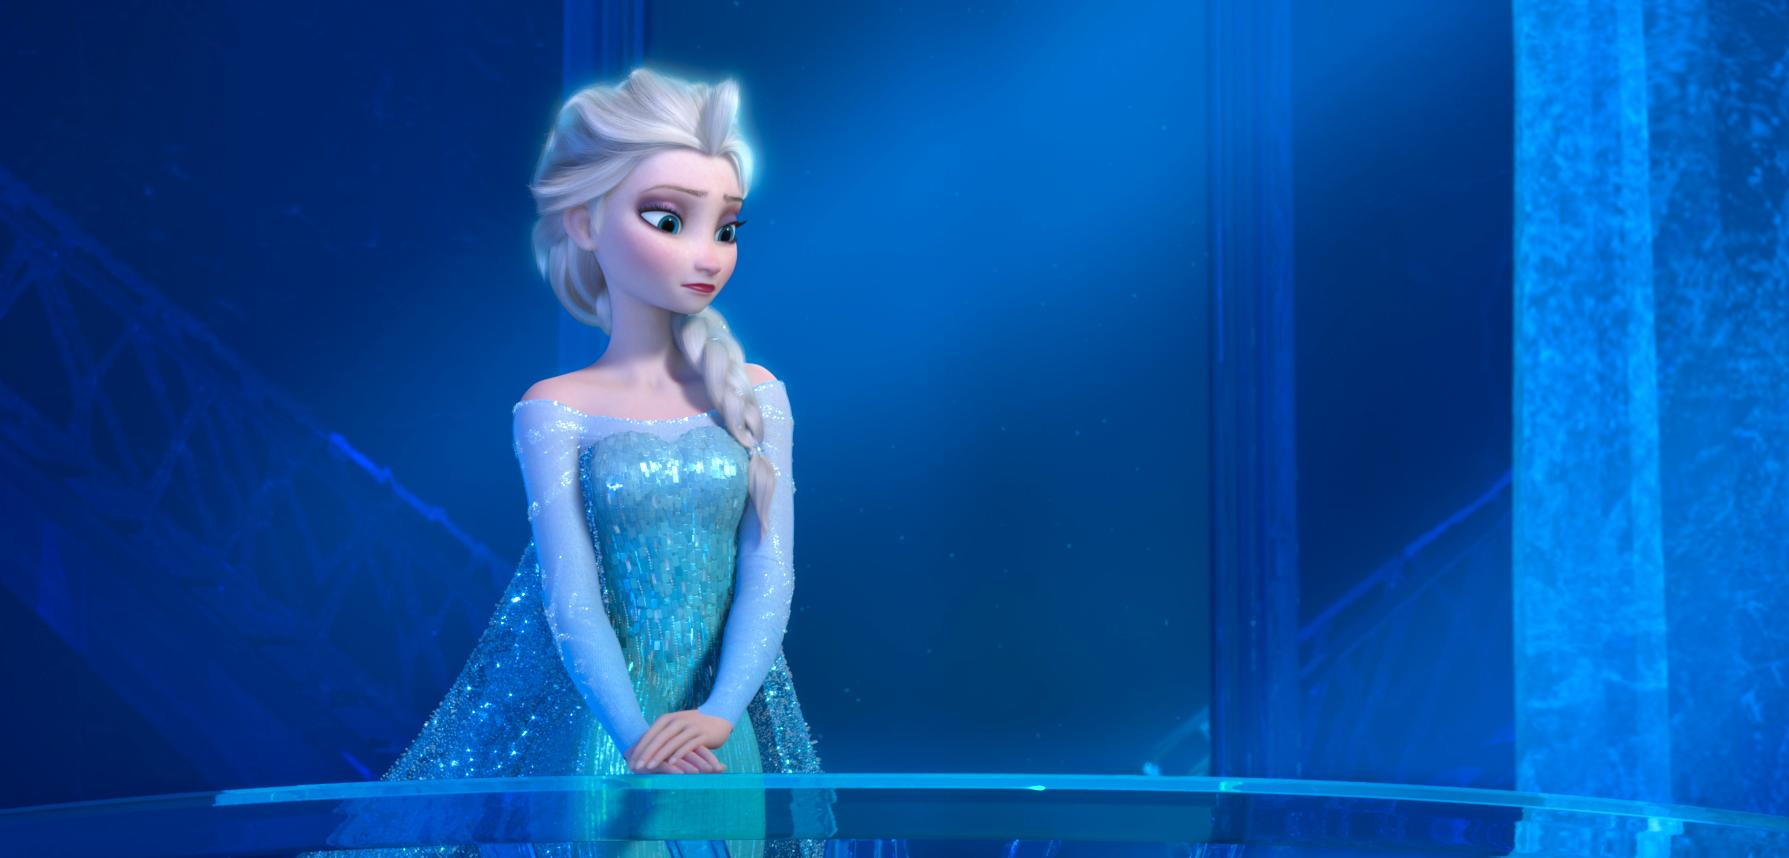 FROST-FEBER: Tegnefilmen «Frost» foregår i et norskinspirert landskap med Elsa (bildet) og søsteren Anna i hovedrollene. Filmen har spilt inn nesten åtte milliarder kroner for mediegiganten Disney.